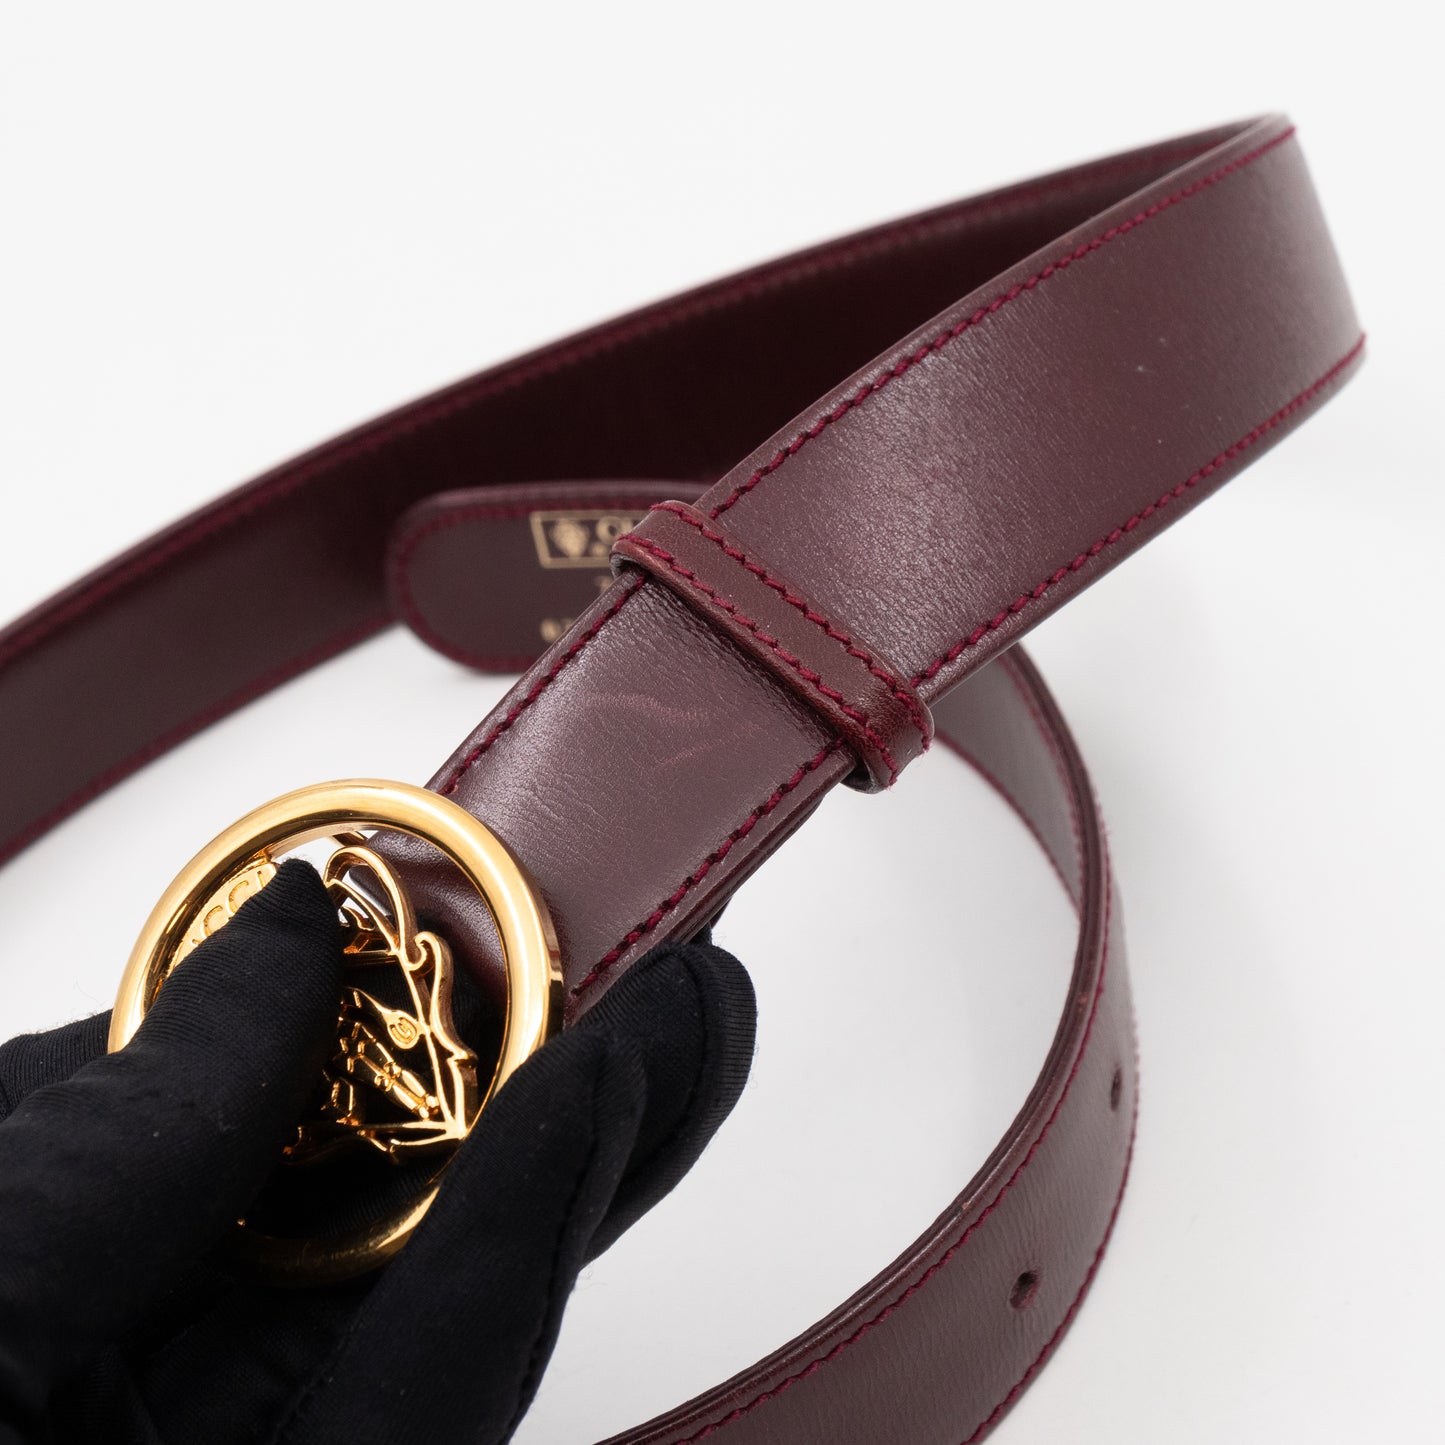 Vintage Crest Belt Burgundy Leather 70/28